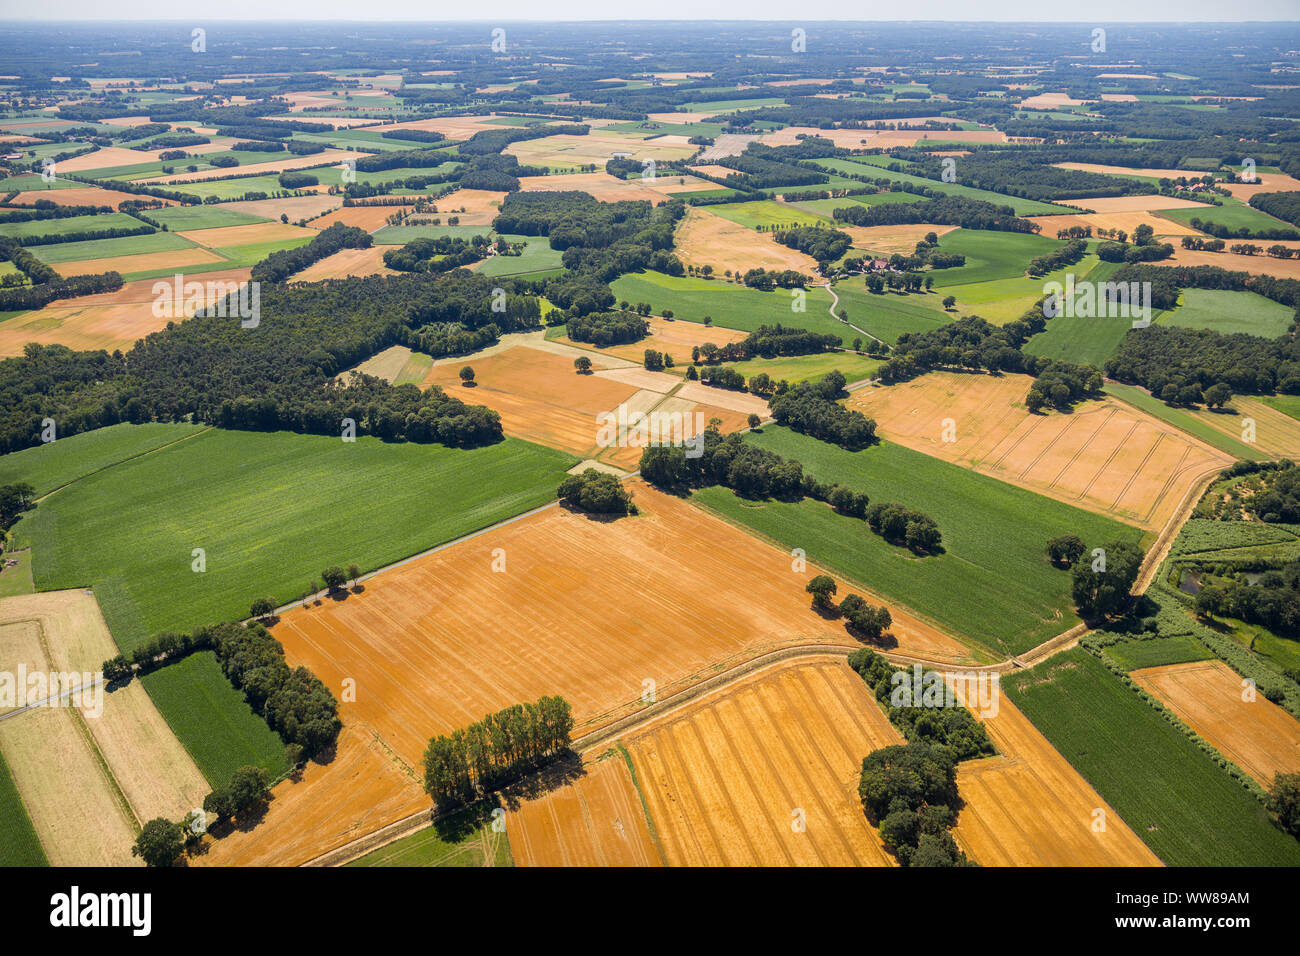 Vue aérienne, vue de l'orientation BrÃ¼skenheide Brock, Brock, Ostbevern, MÃ¼nsterland, Nordrhein-Westfalen, Germany, Europe Banque D'Images